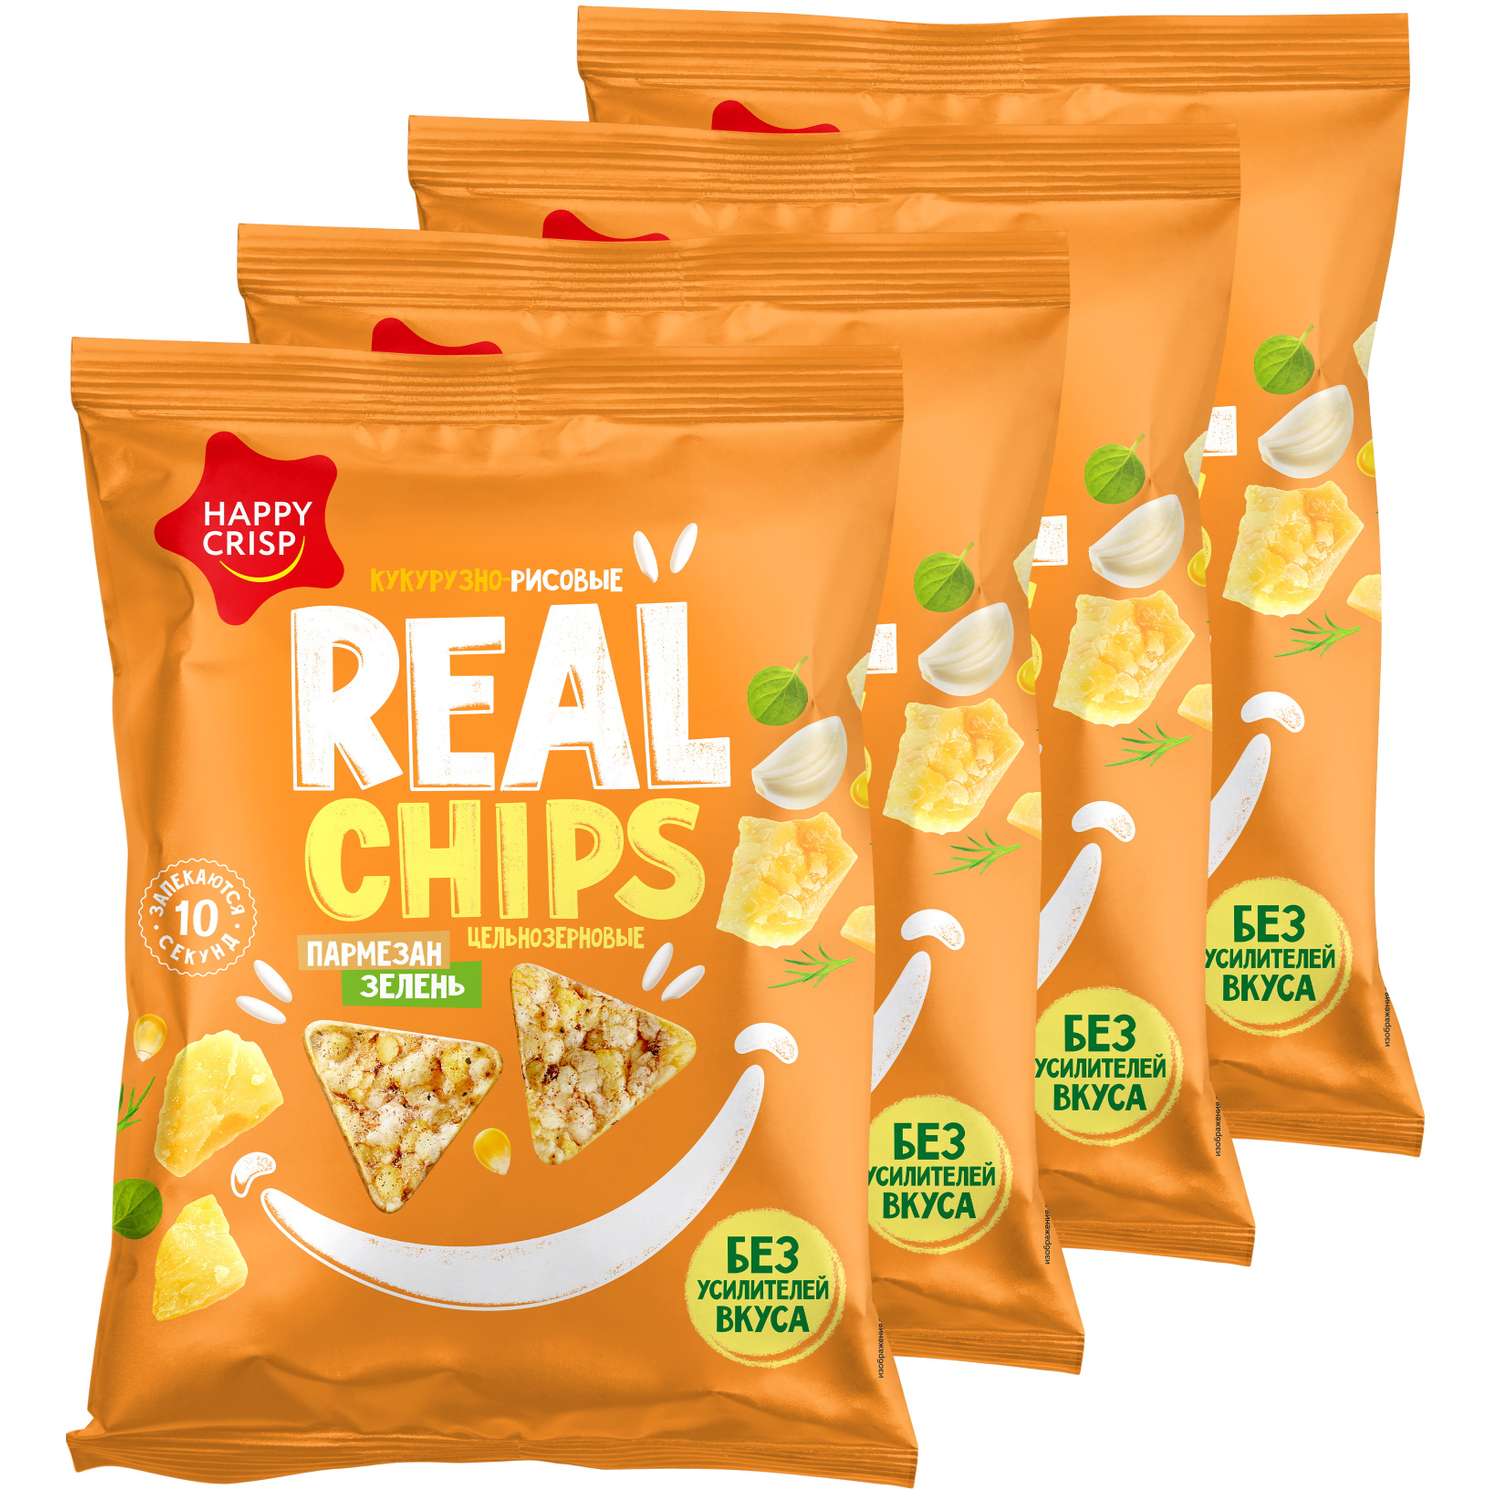 Чипсы цельнозерновые Happy Crisp кукурузно-рисовые Real Chips пармезан с чесноком и зеленью 4 шт по 50 г - фото 1